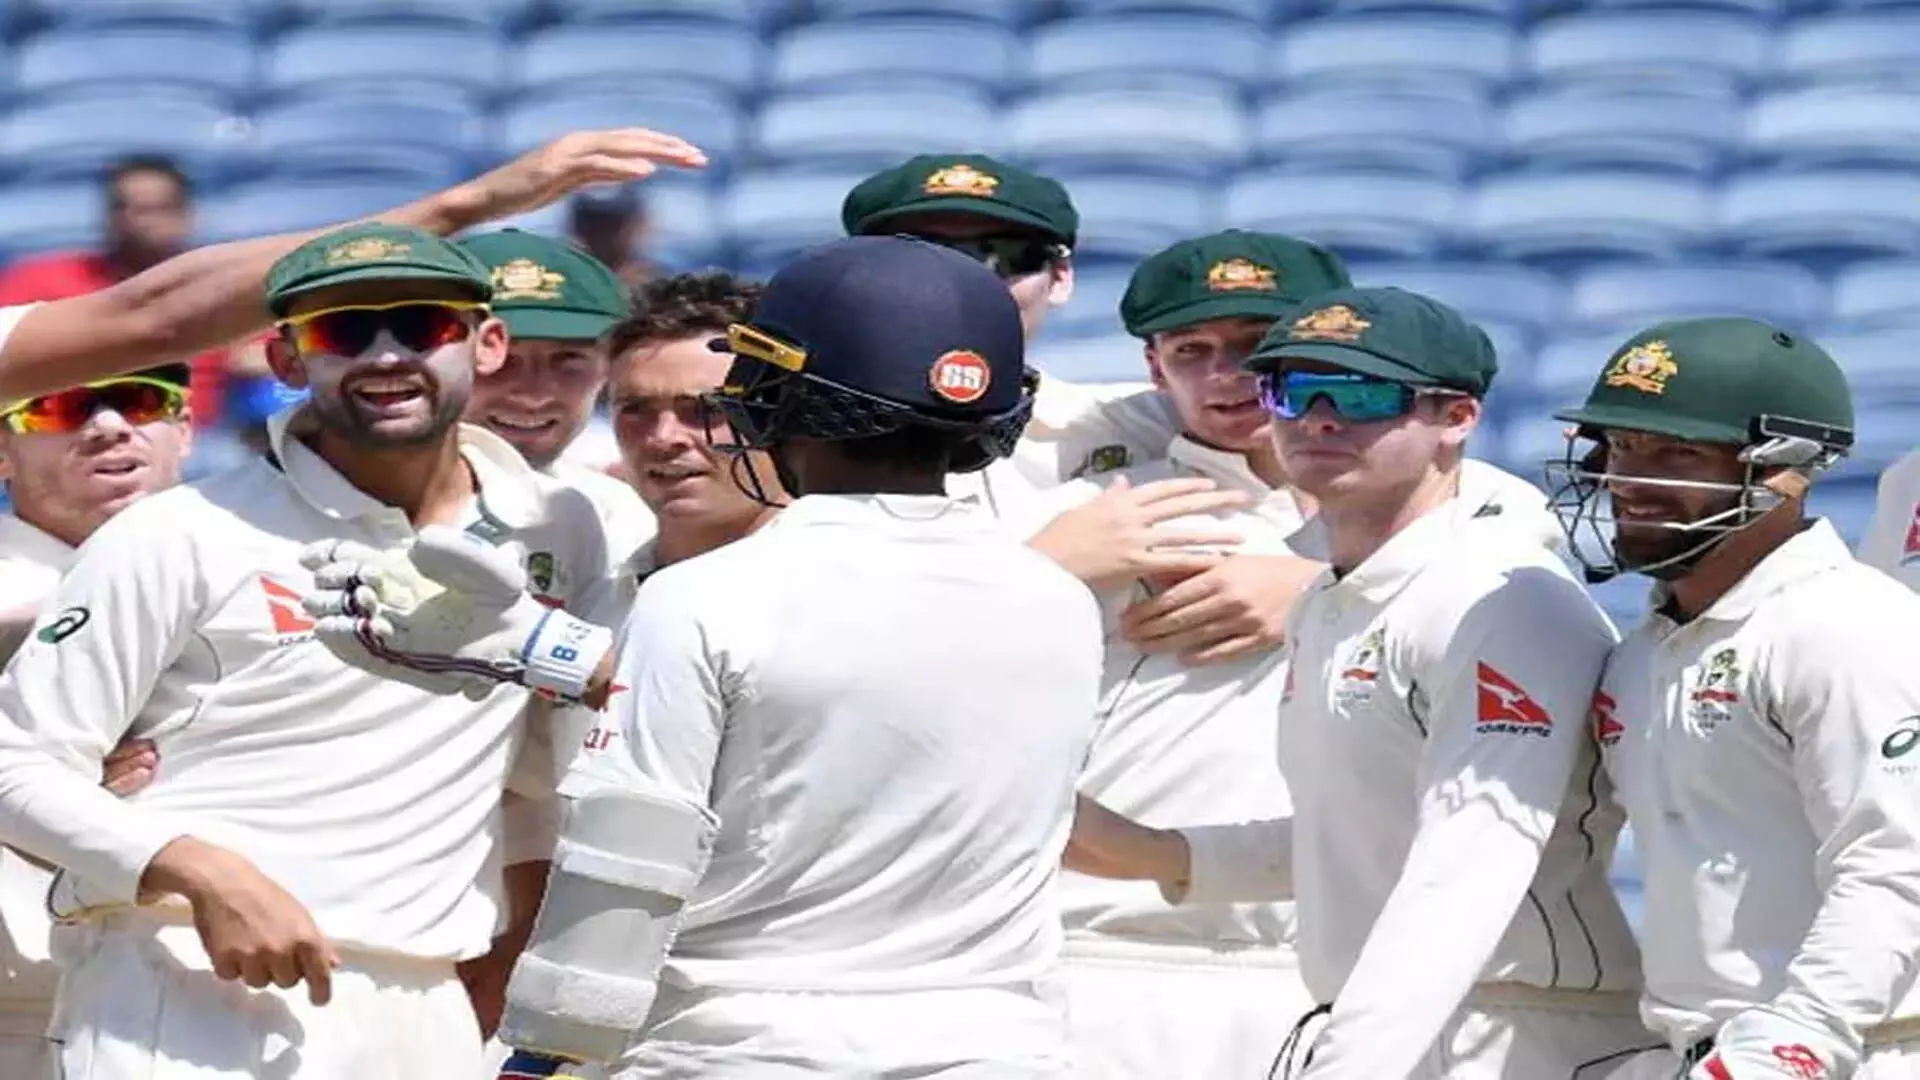 क्रिकेट ऑस्ट्रेलिया ने भारत के खिलाफ 5 टेस्ट मैचों के लिए स्थानों को अंतिम रूप दिया